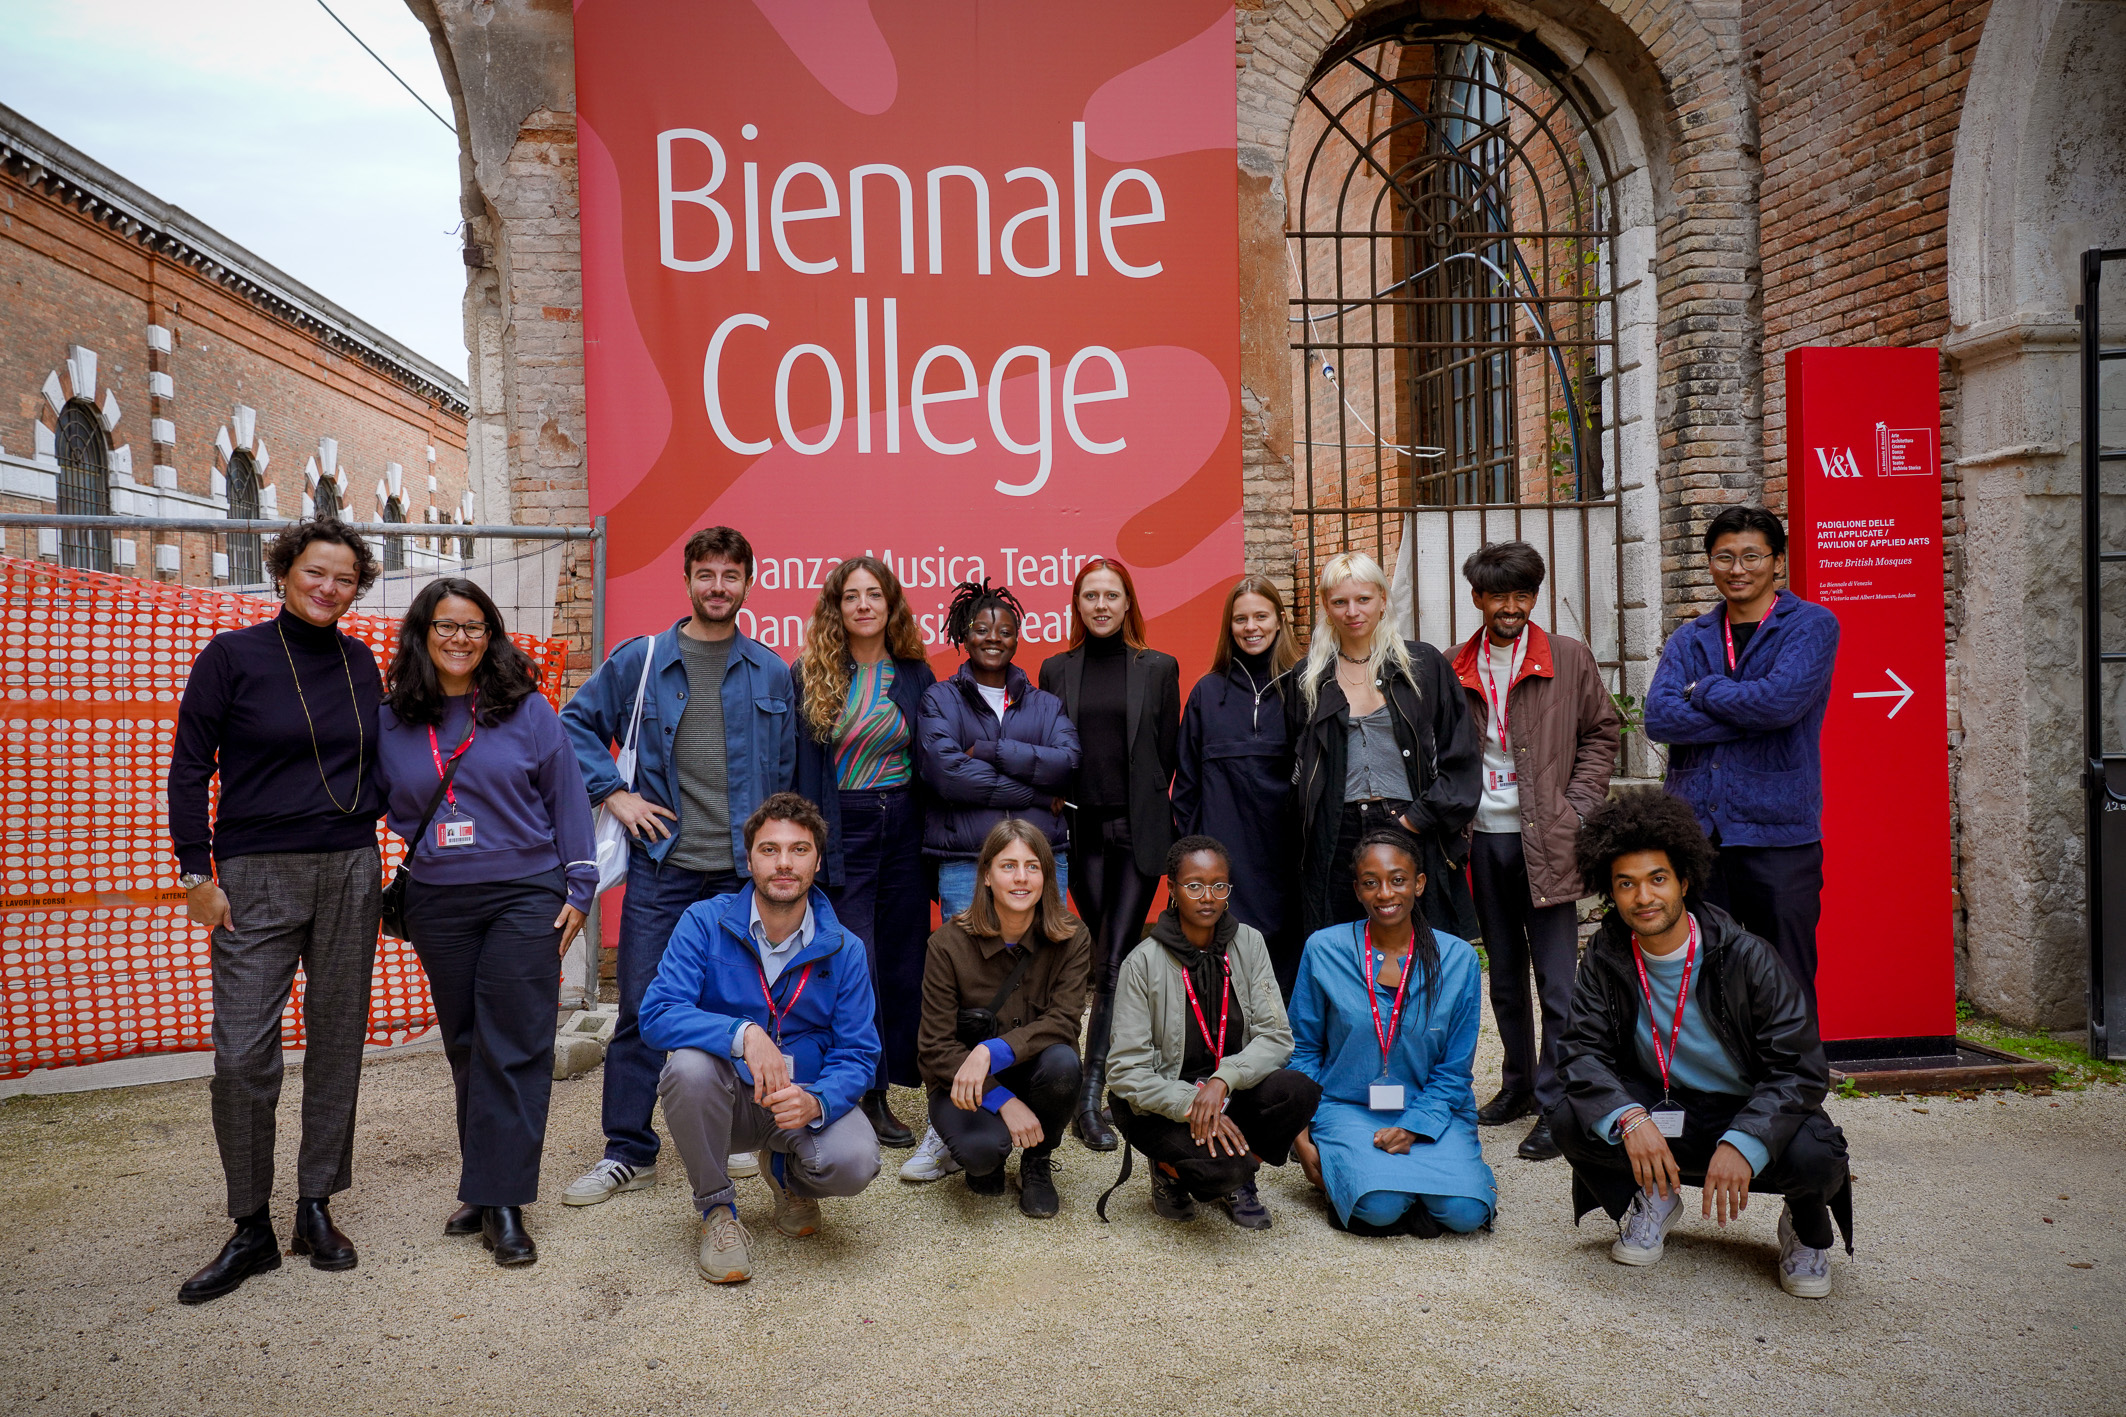 Biennale college giovani